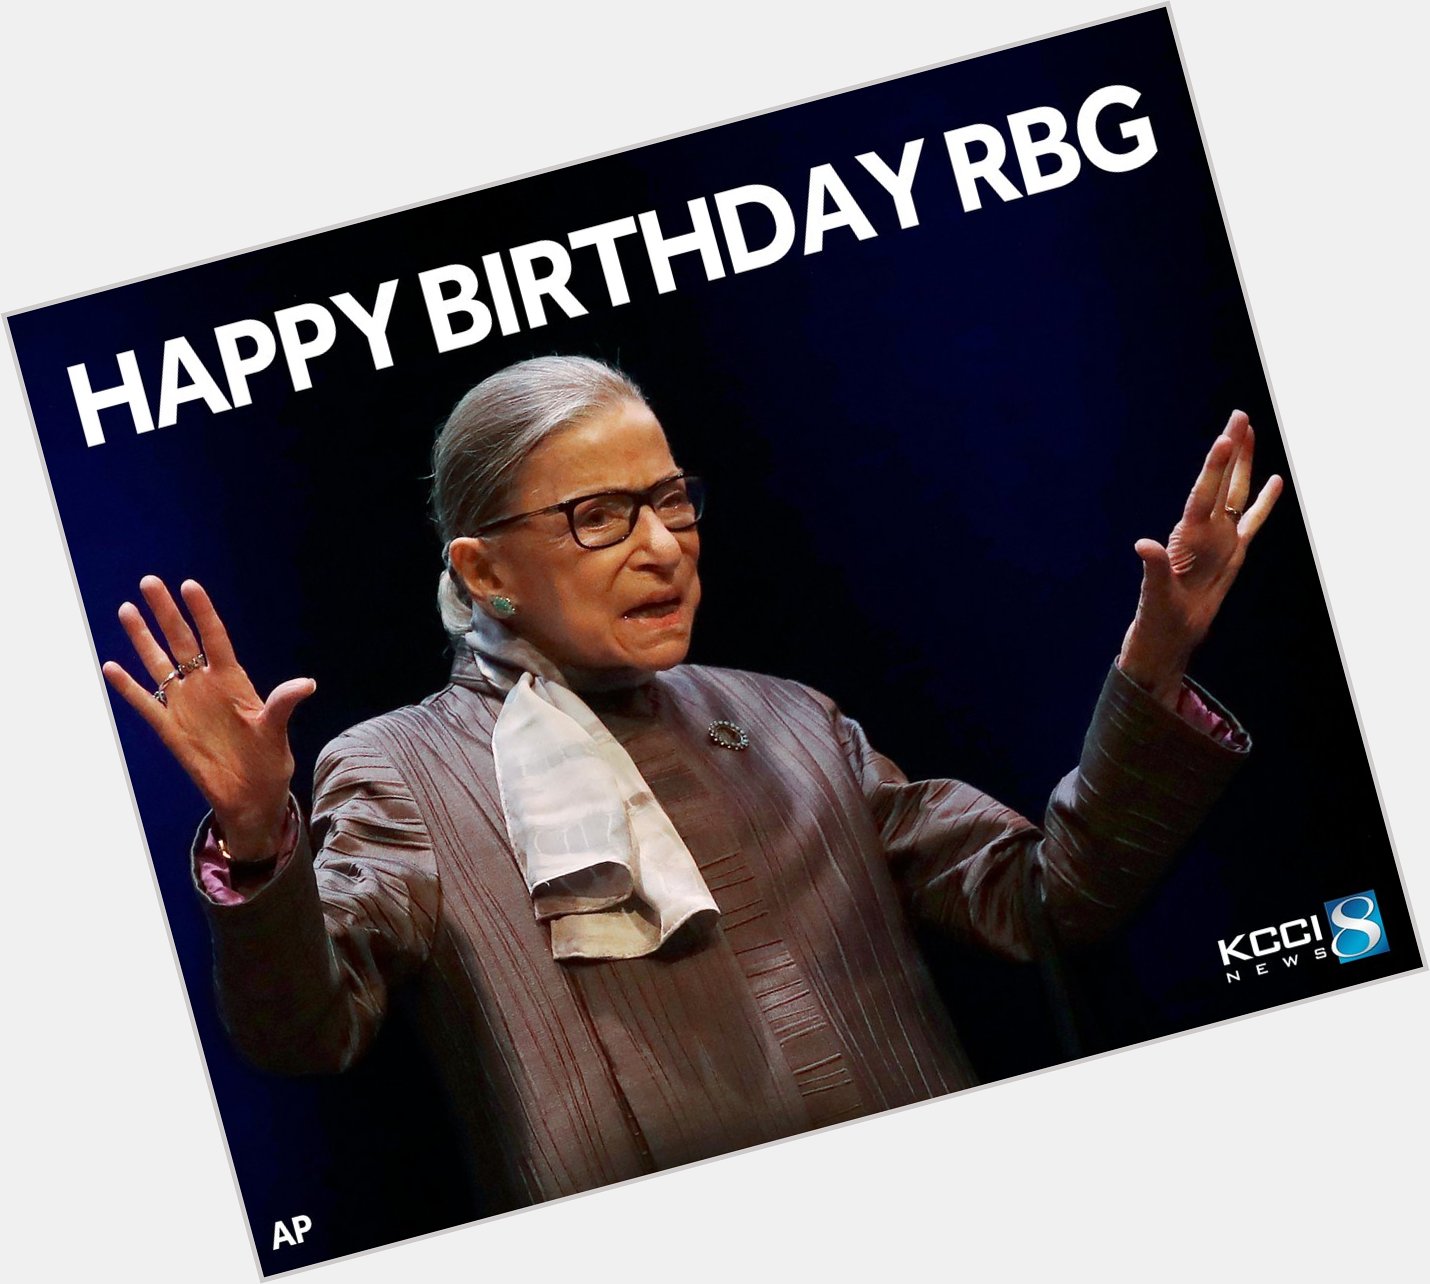 Happy birthday, Ruth Bader Ginsburg!  